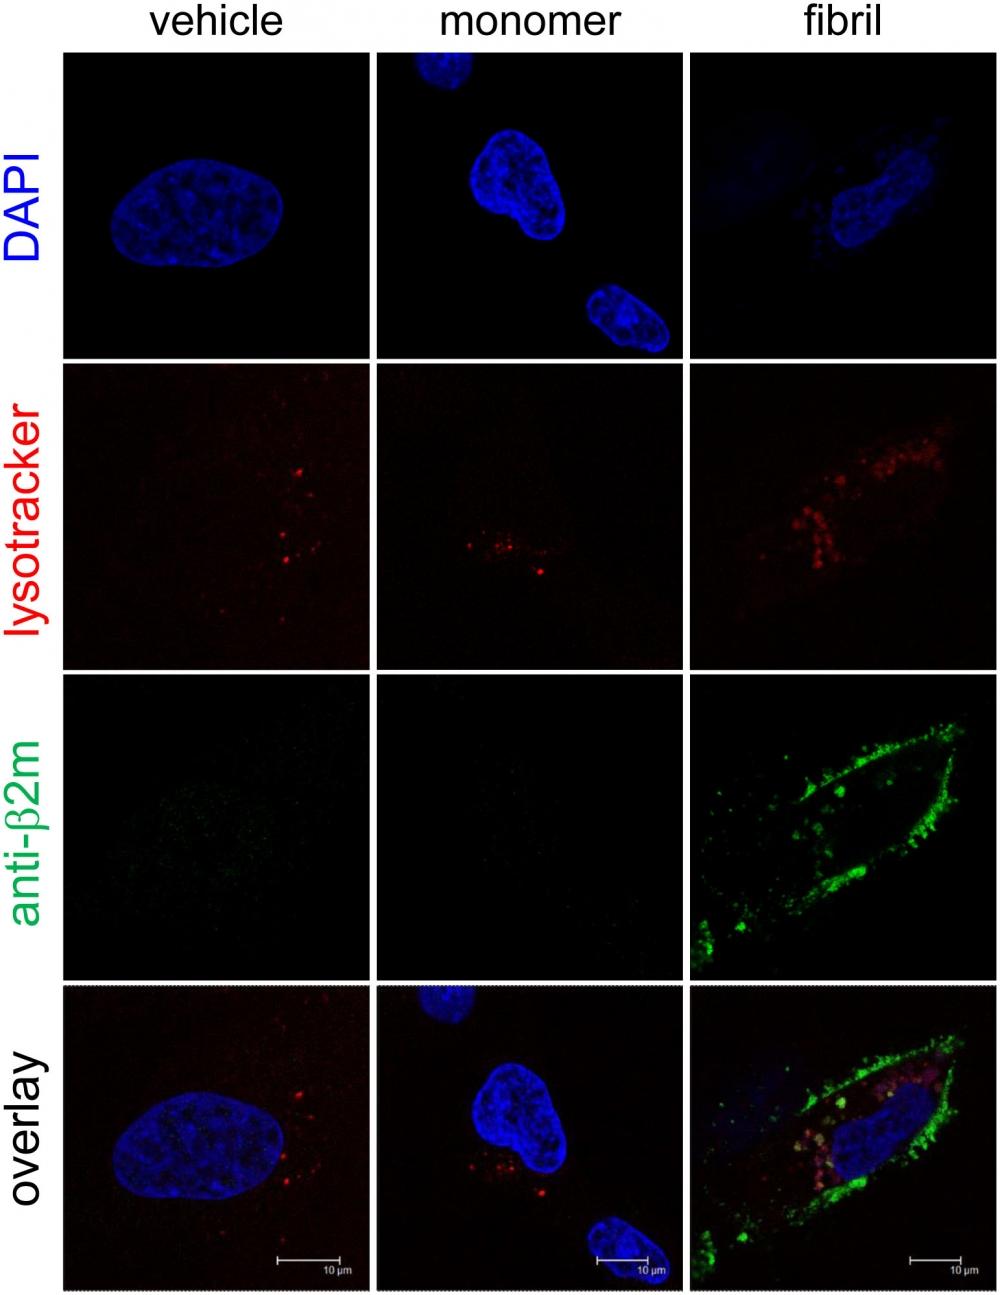 β2-m amyloid fibrils are internalized and sorted to lysosomes. HIG-82 cells incubated with Ham’s F12 medium containing vehicle buffer, 10 μg/ml β2-m monomer, or 10 μg/ml β2-m fibrils for 12 hrs were stained for lysosomes (red), β2-m (green), and nuclei (blue), and observed with the confocal laser microscope as described in Materials and Methods. When the cells were incubated with fibrils (right column), green fluorescence indicating β2-m fibrils were observed inside the cells in a granular pattern, as well as on the surface of the cells. Importantly, some green-colored granules containing β2-m fibrils were merged with red-colored lysosomes. The scale bars are 10 μm long. *HIG-82 cells cultured on a glass bottom culture dish (P35G-0-14-C, MatTek), were incubated with Ham’s F12 medium containing vehicle buffer, 10 μg/ml β2-m monomer, or 10 μg/ml β2-m fibrils for 12 hrs, washed twice with culture medium, stained with lysotracker (Cell Navigator Lysosome Staining Kit, AAT Bioquest, Inc., Sunnyvale, CA, USA) according to the manufacturer’s instructions, washed twice with culture medium, and fixed with 4% paraformaldehyde in PBS for 30 min at 37°C in the dark. Source: Graph from <strong>Endocytosed β2-Microglobulin Amyloid Fibrils Induce Necrosis and Apoptosis of Rabbit Synovial Fibroblasts by Disrupting Endosomal/Lysosomal Membranes: A Novel Mechanism on the Cytotoxicity of Amyloid Fibrils</strong> by Tadakazu Okoshi, et al., <em>PLoS ONE</em>, Sep.  2015. 